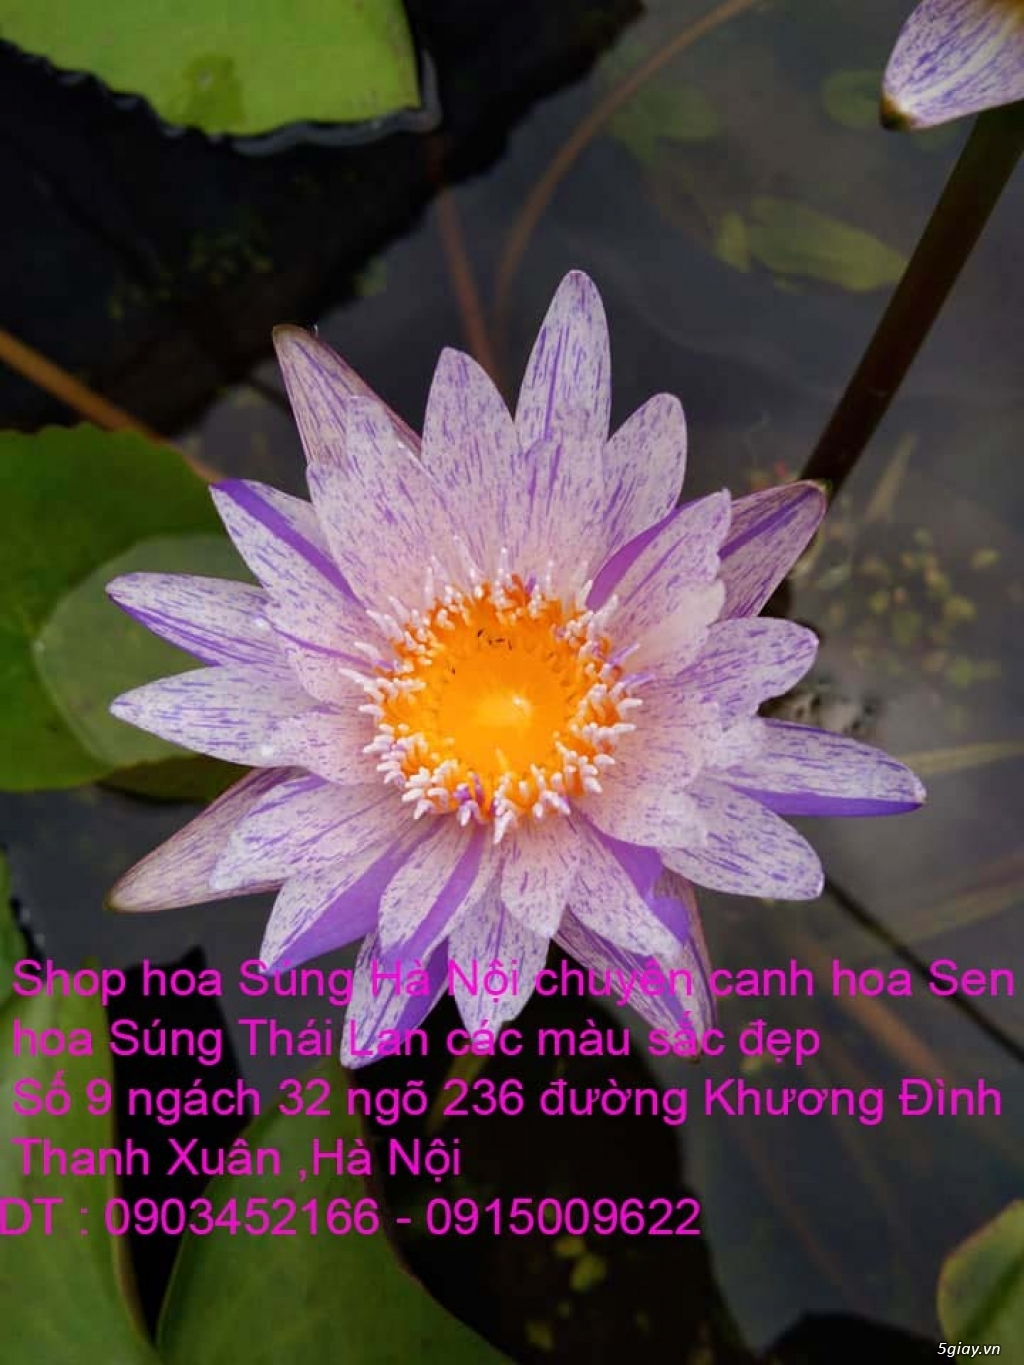 Bán hoa Sen , hoa Súng Thái Lan 120 màu sắc đẹp nở hoa bốn mùa tại HN - 9